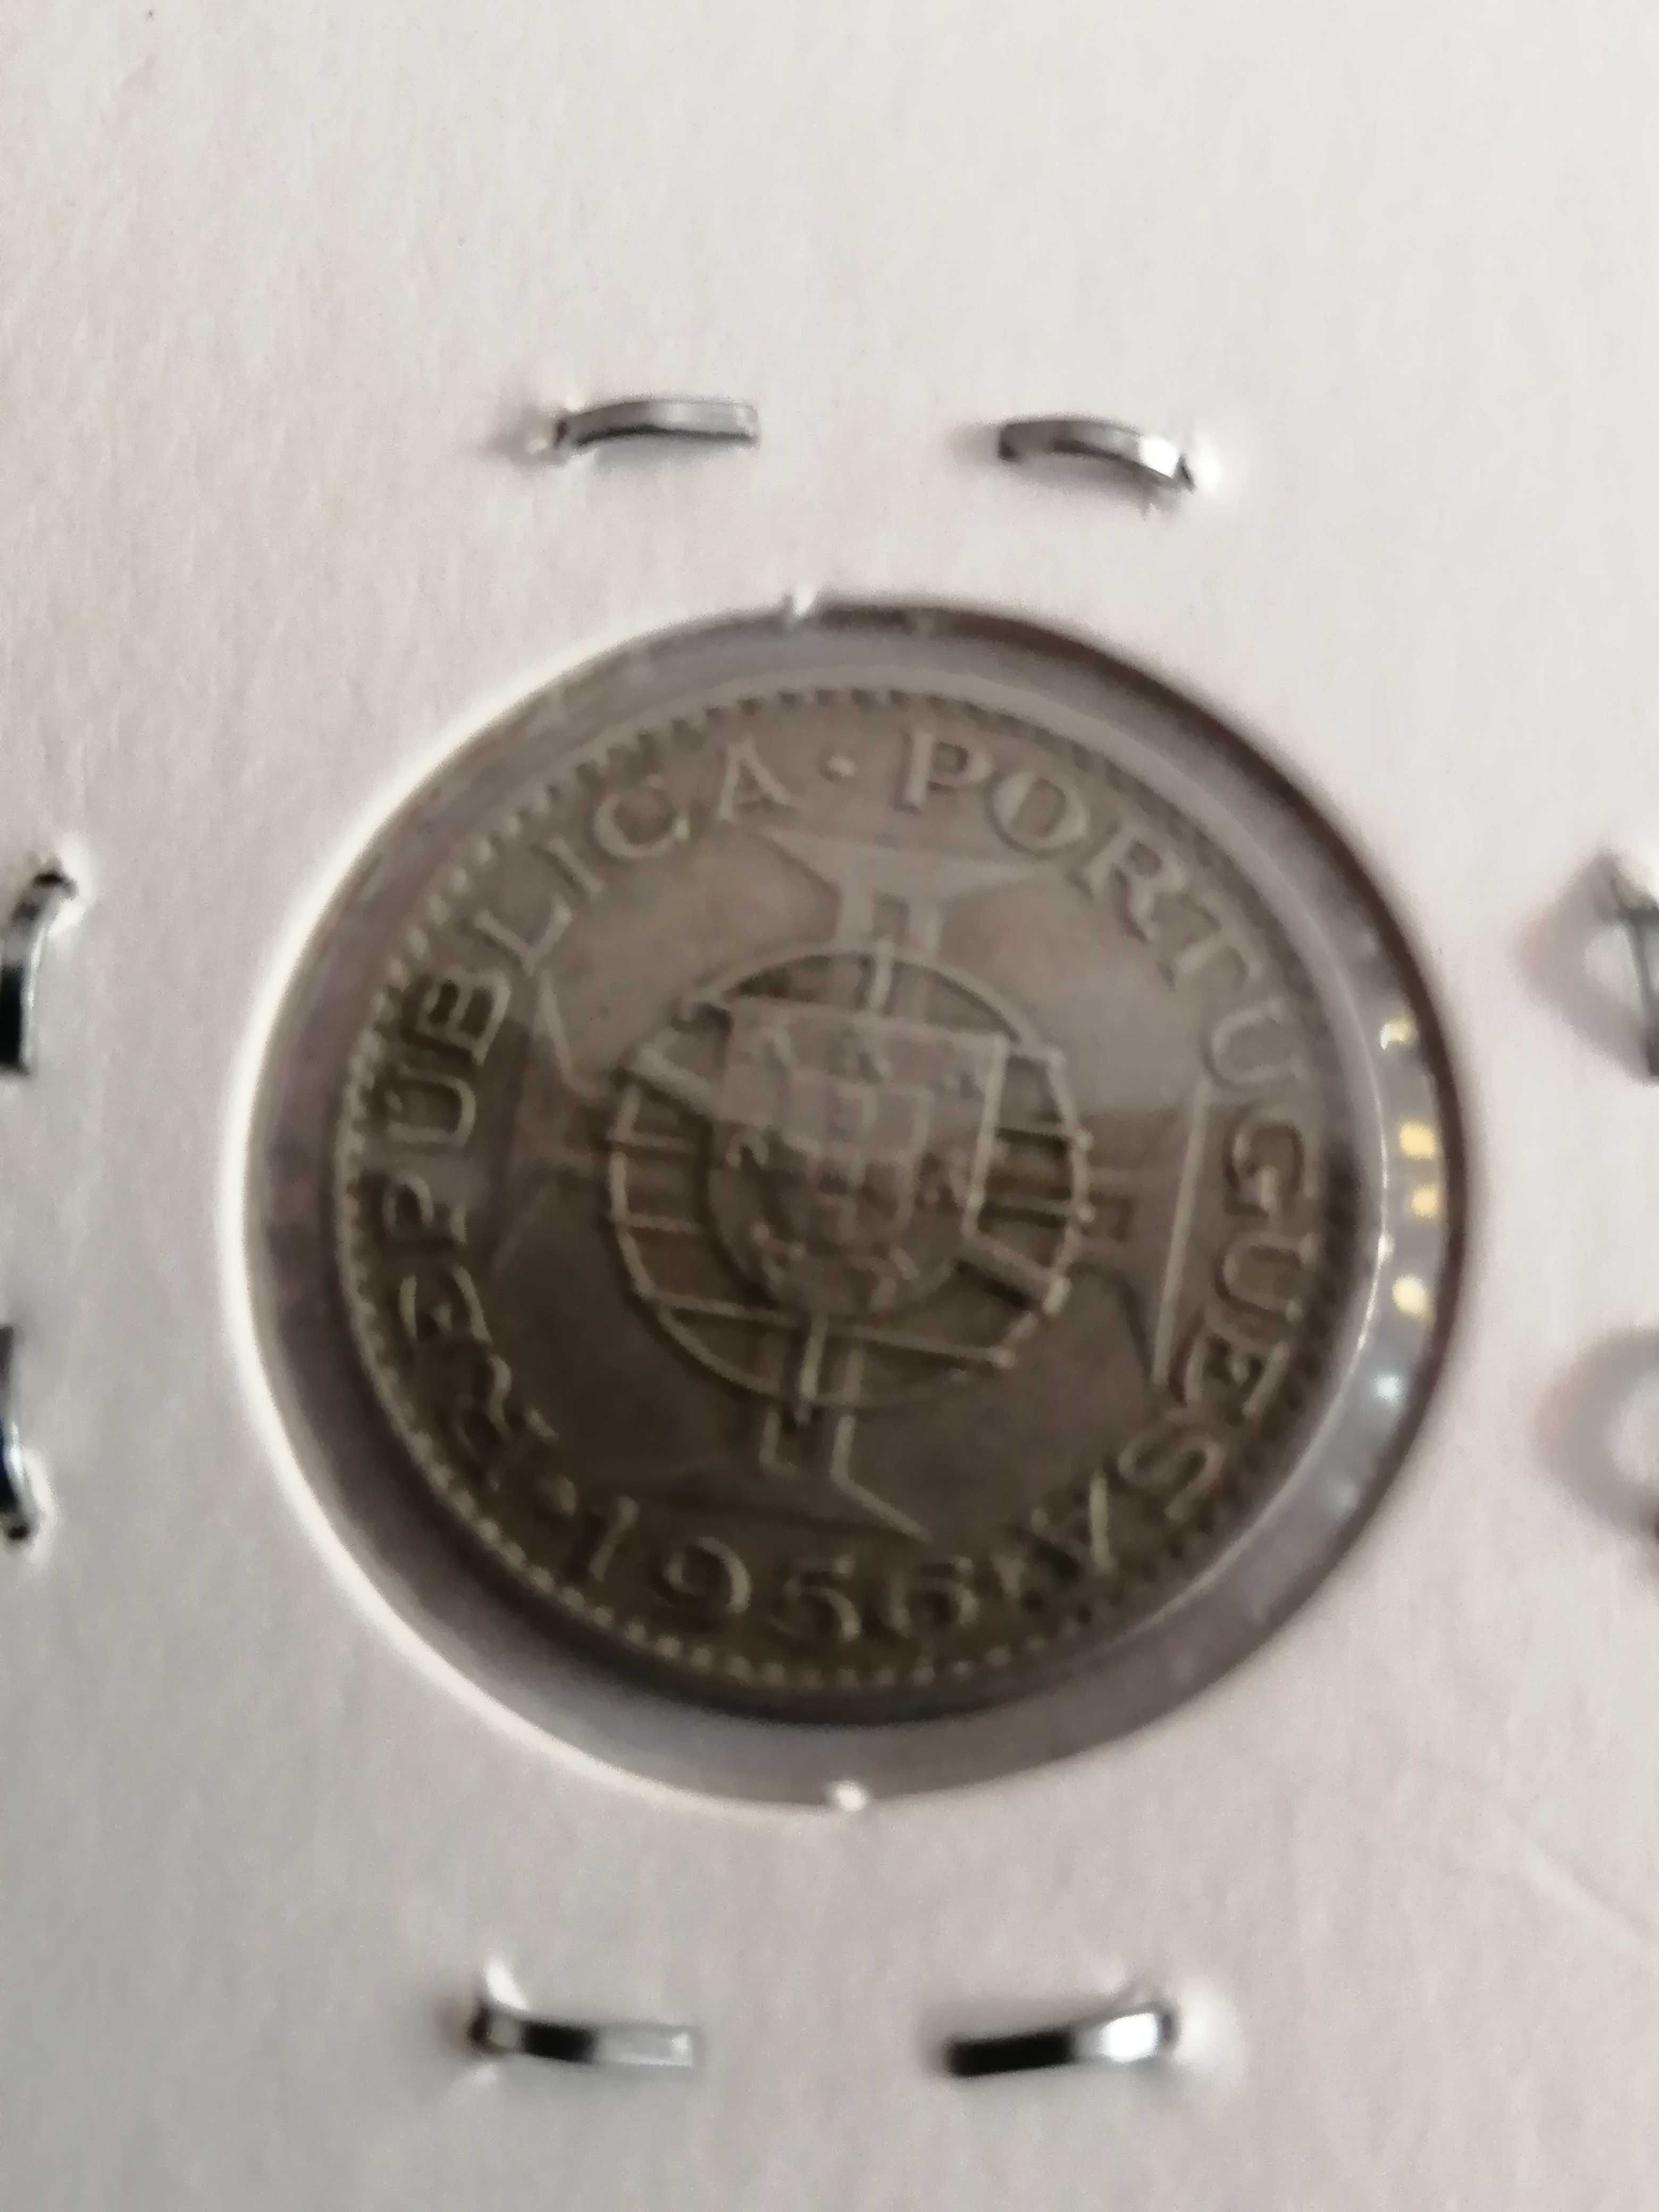 Colecção completa de moedas de 2,50esc.Angola.